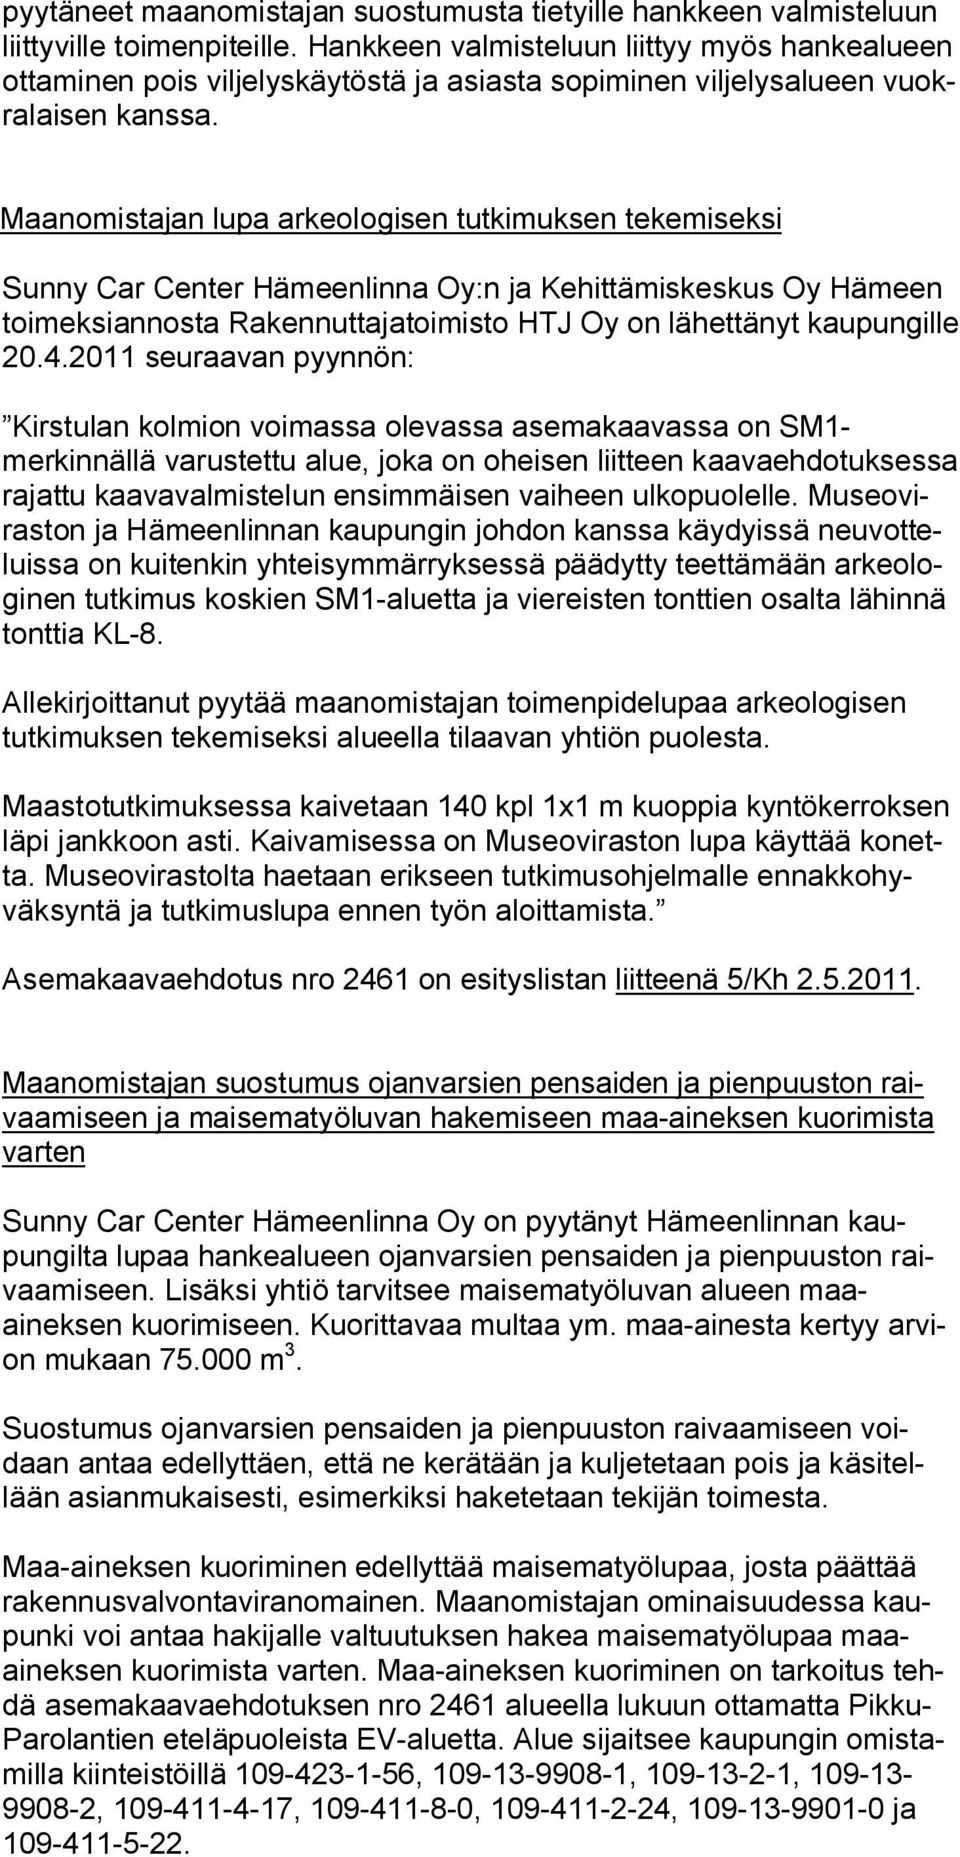 Maanomistajan lupa arkeologisen tutkimuksen tekemiseksi Sunny Car Center Hämeenlinna Oy:n ja Kehittämiskeskus Oy Hämeen toimeksiannosta Rakennuttajatoimisto HTJ Oy on lähettänyt kaupungille 20.4.